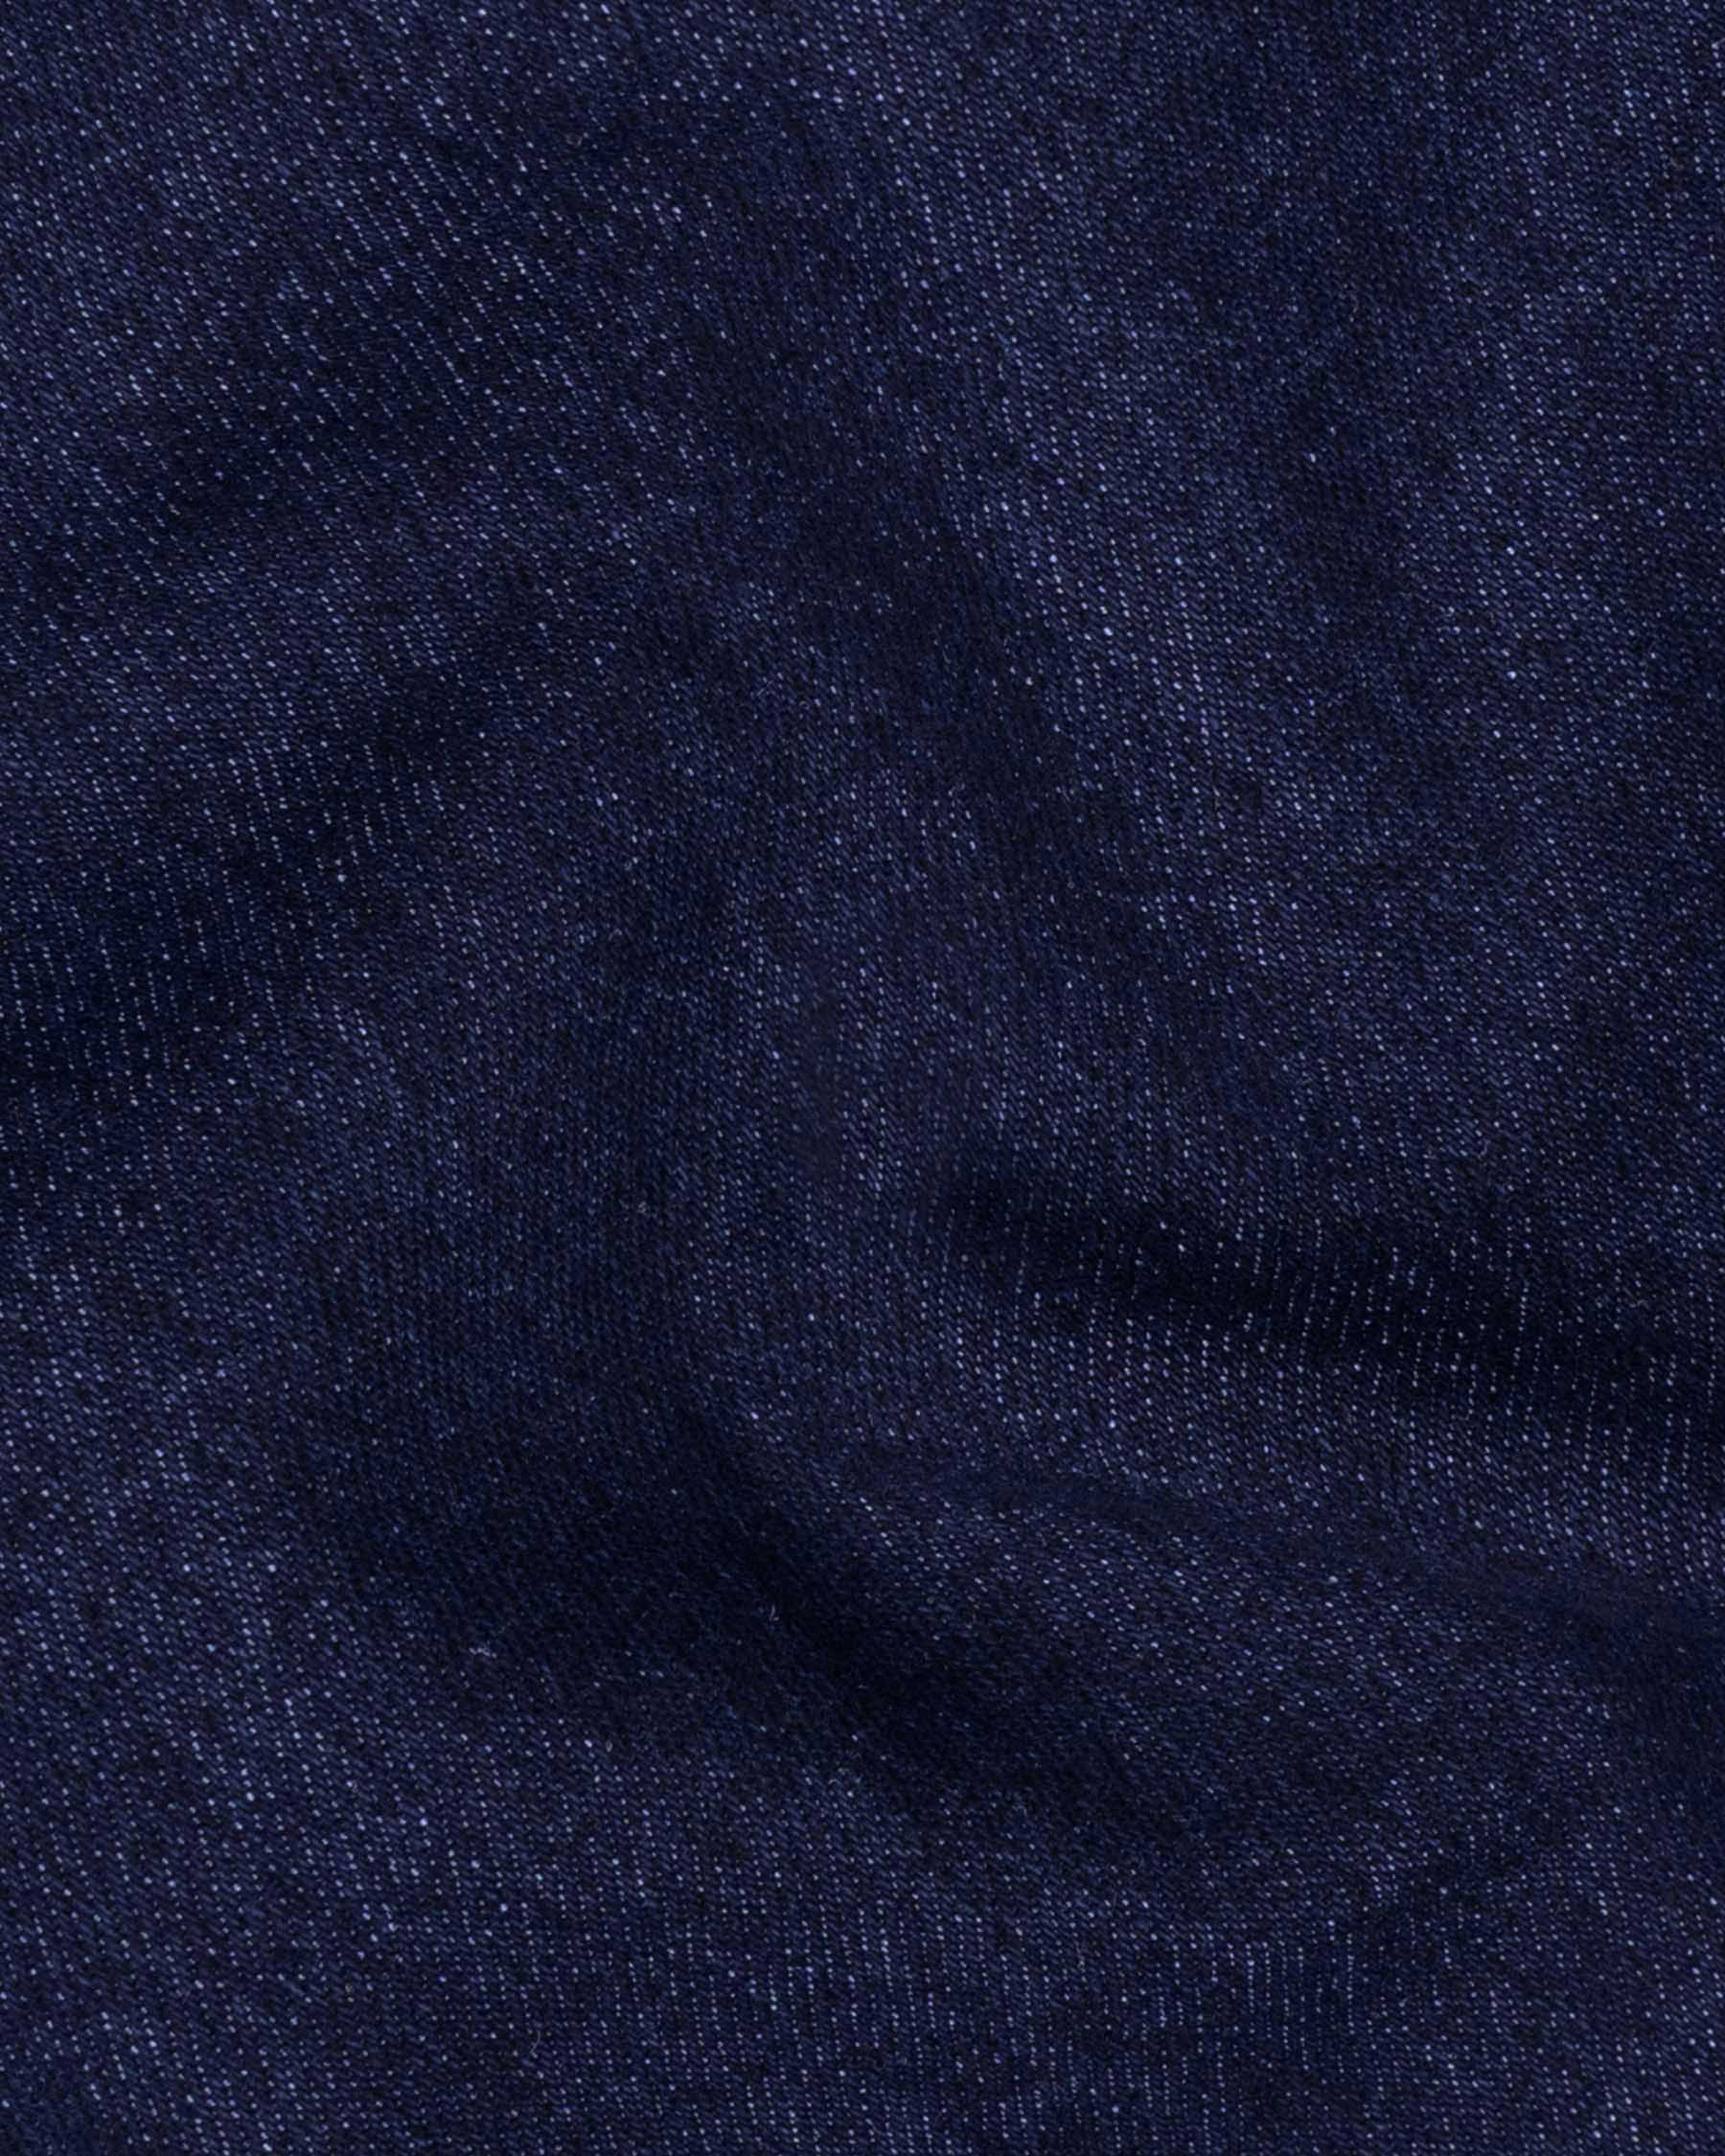 Haiti Blue Clean Look Stretchable Denim J117-32, J117-34, J117-36, J117-38, J117-40